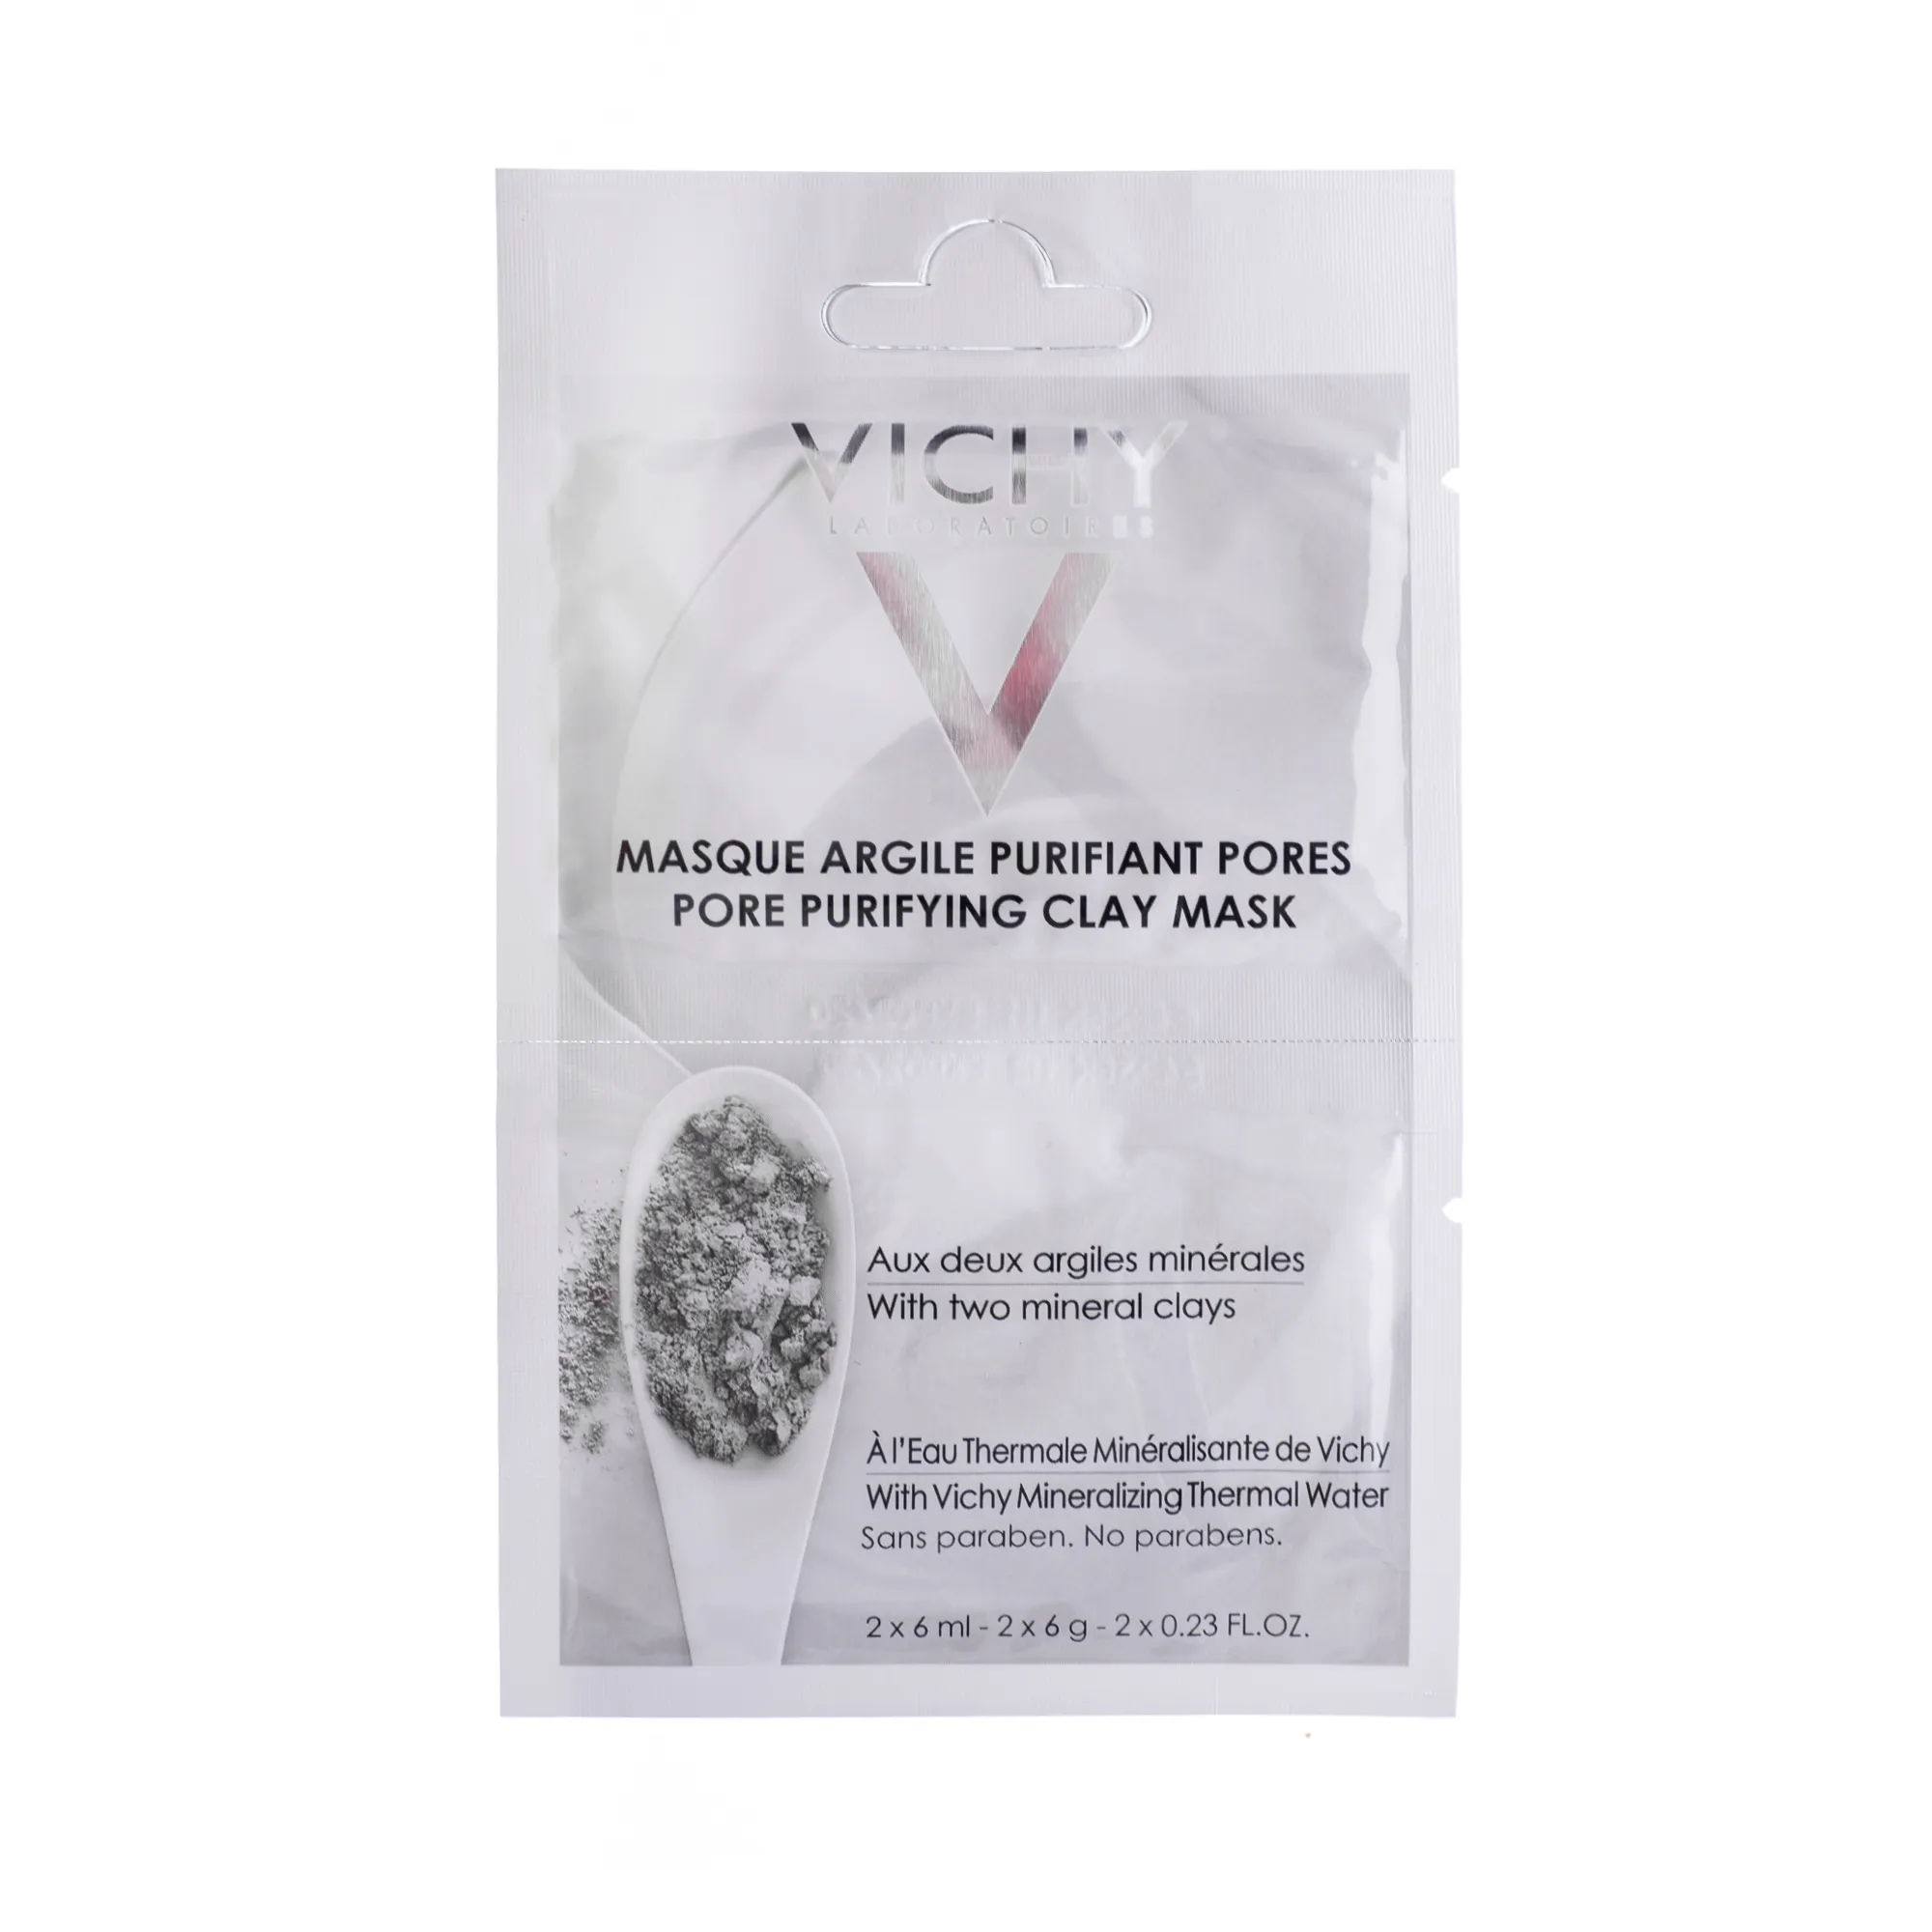 Vichy, maska oczyszczająca pory z glinką, 2 x 6ml